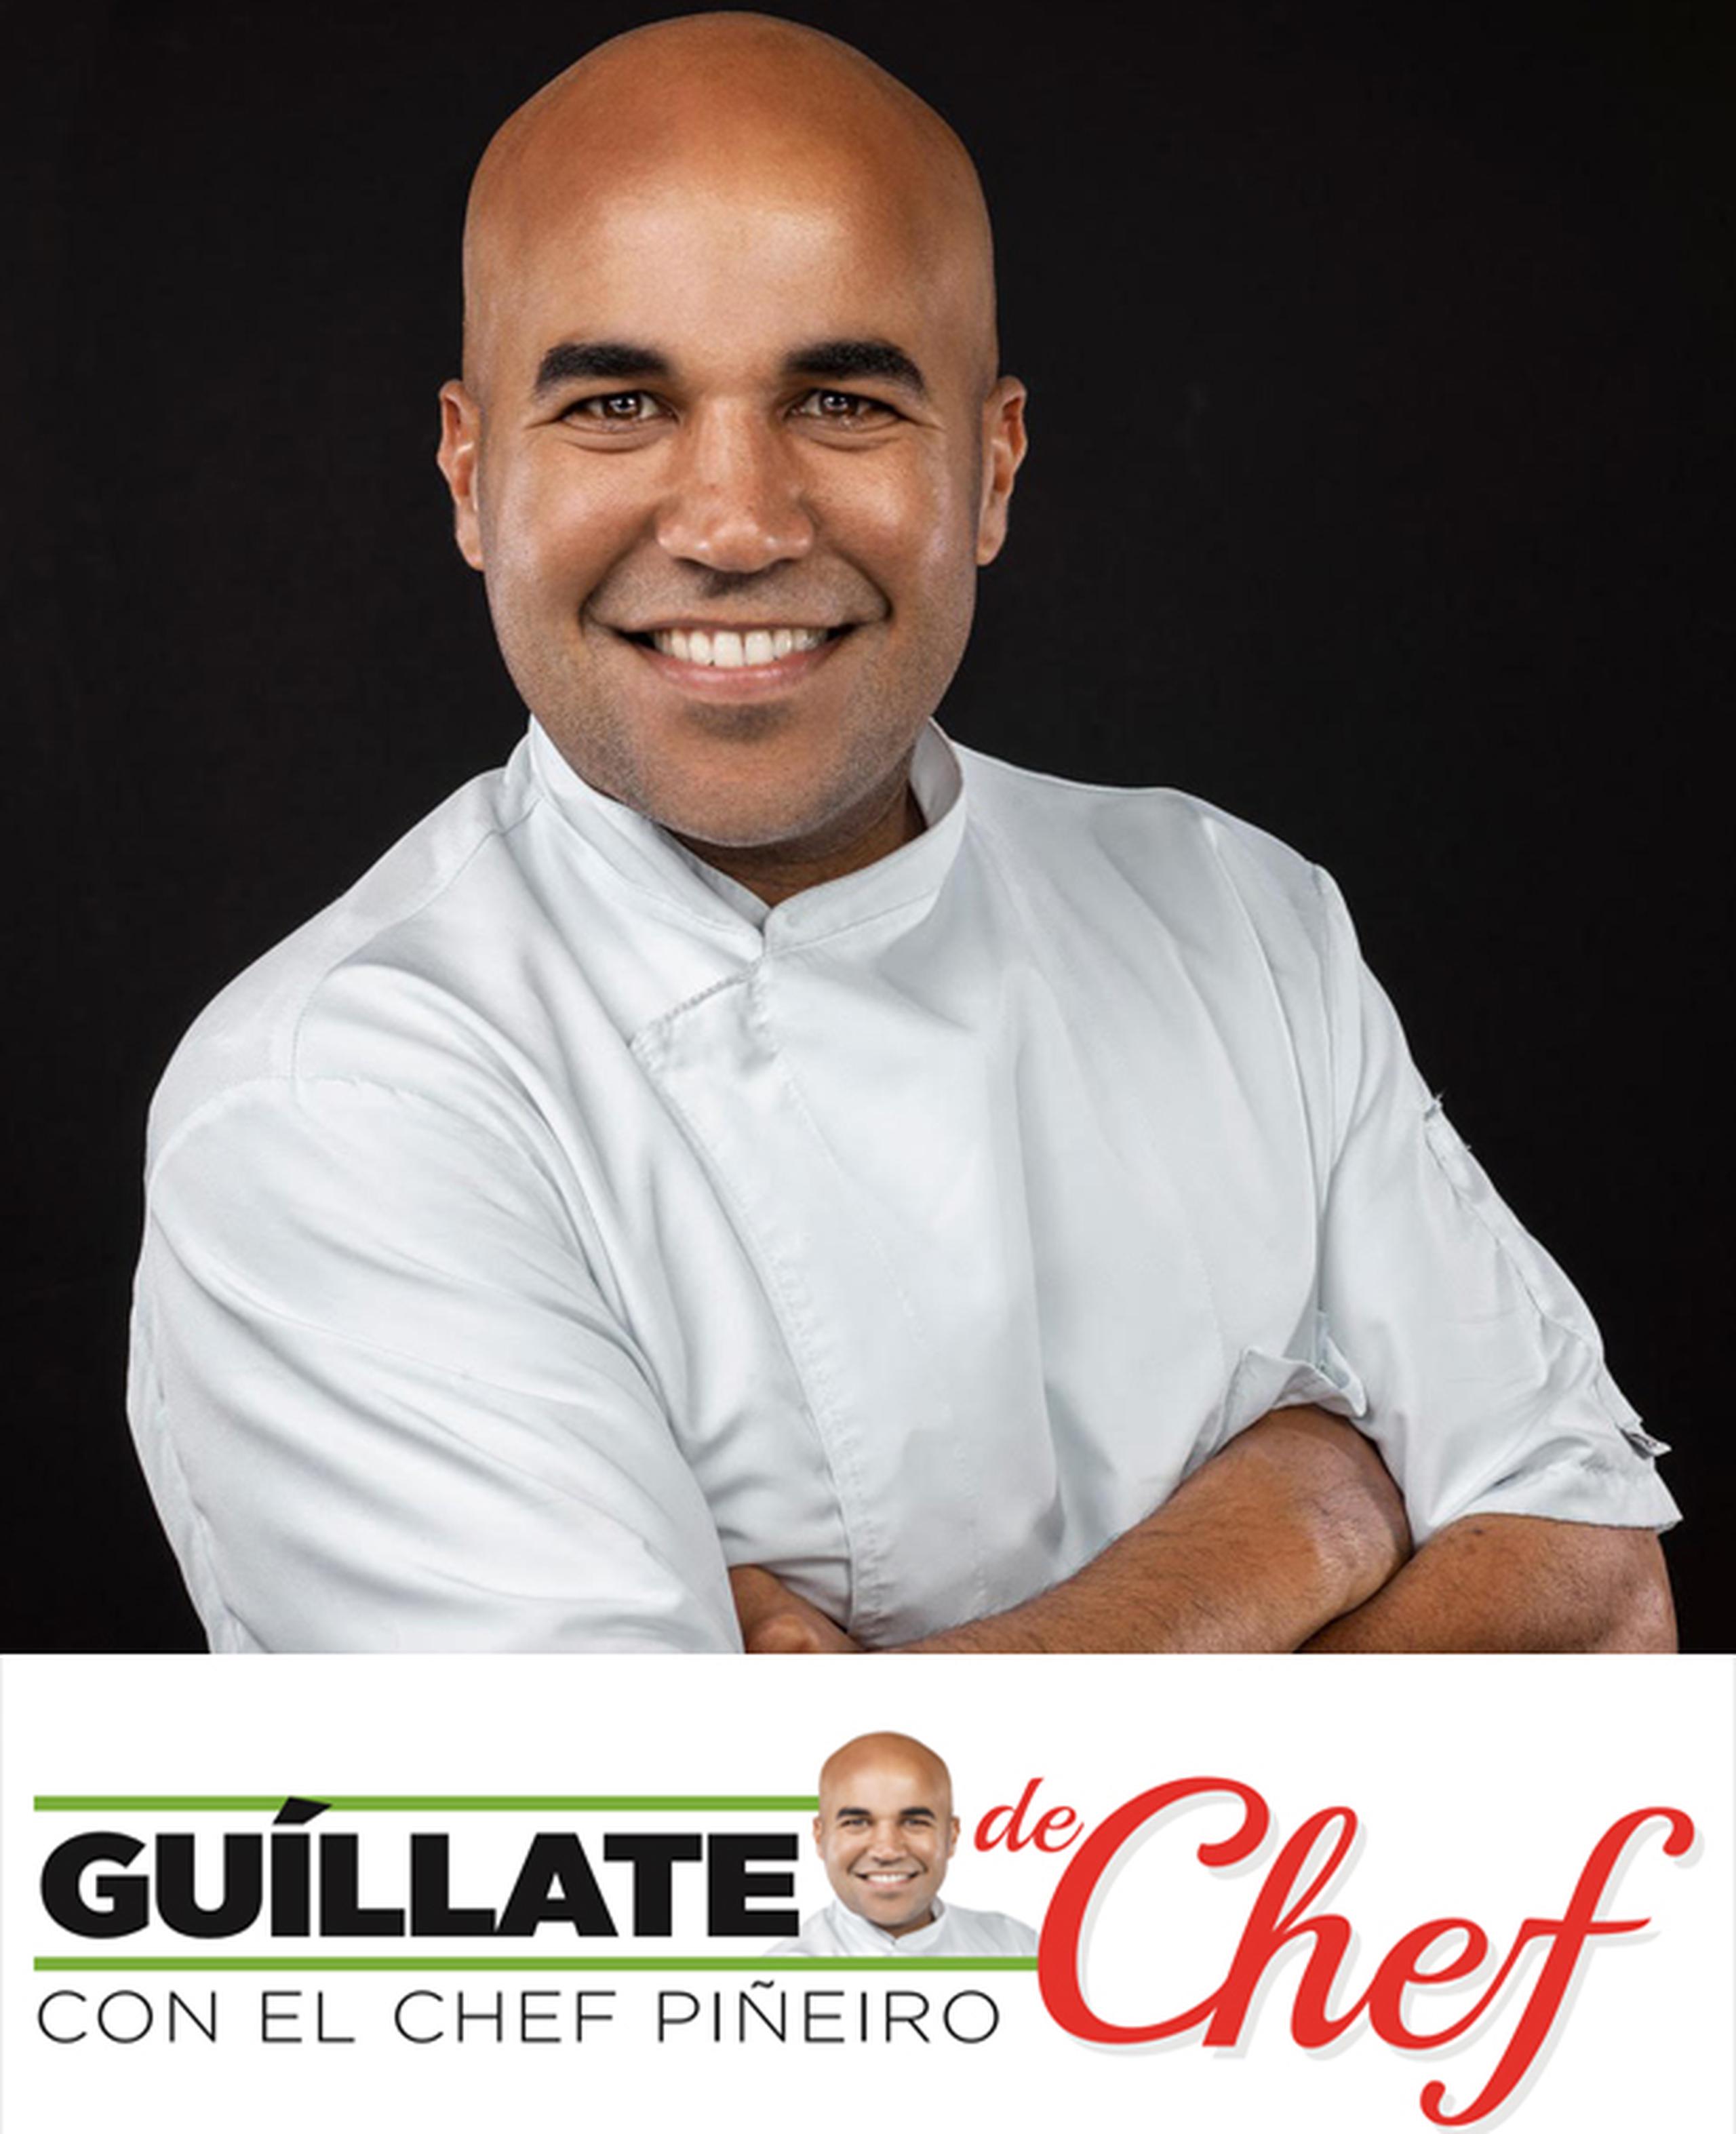 El reconocido Chef Piñeiro estrena hoy el segmento Guíllate de chef a través de Primerahora.com